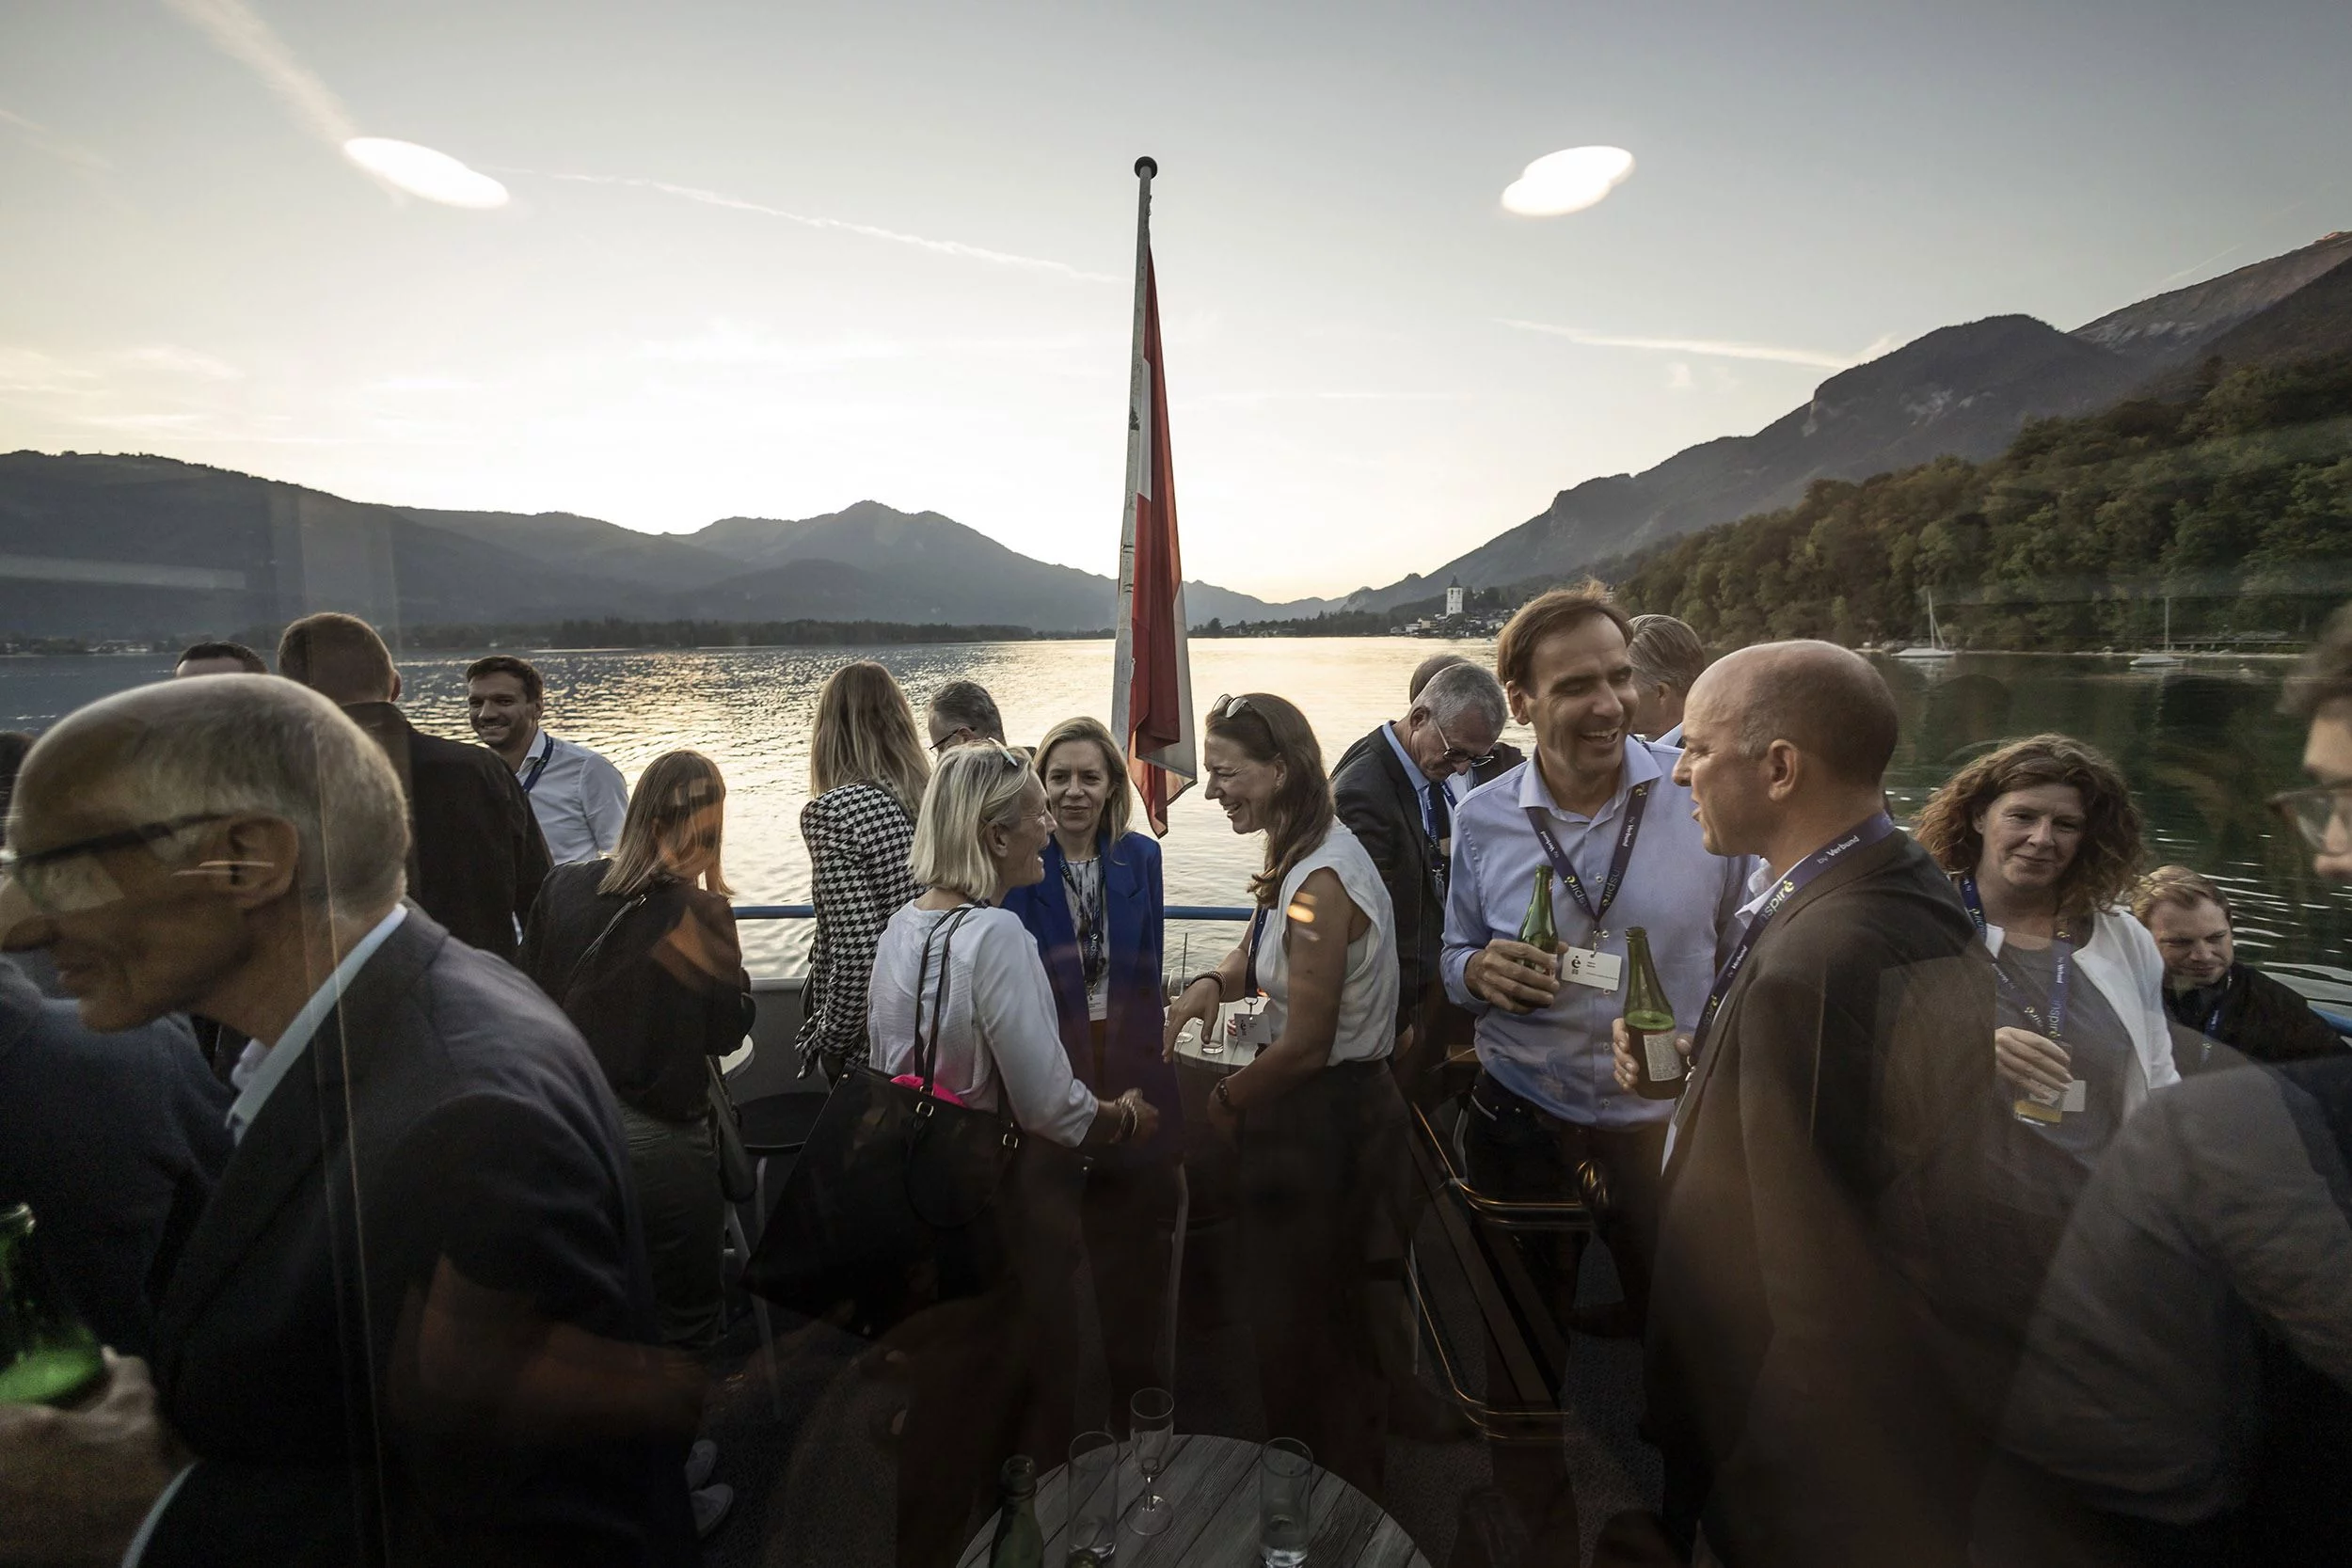 Inspire am 27. September: Konferenzteilnehmende auf dem Schiff auf dem Wolfgangsee. Copryright Mirja Geh